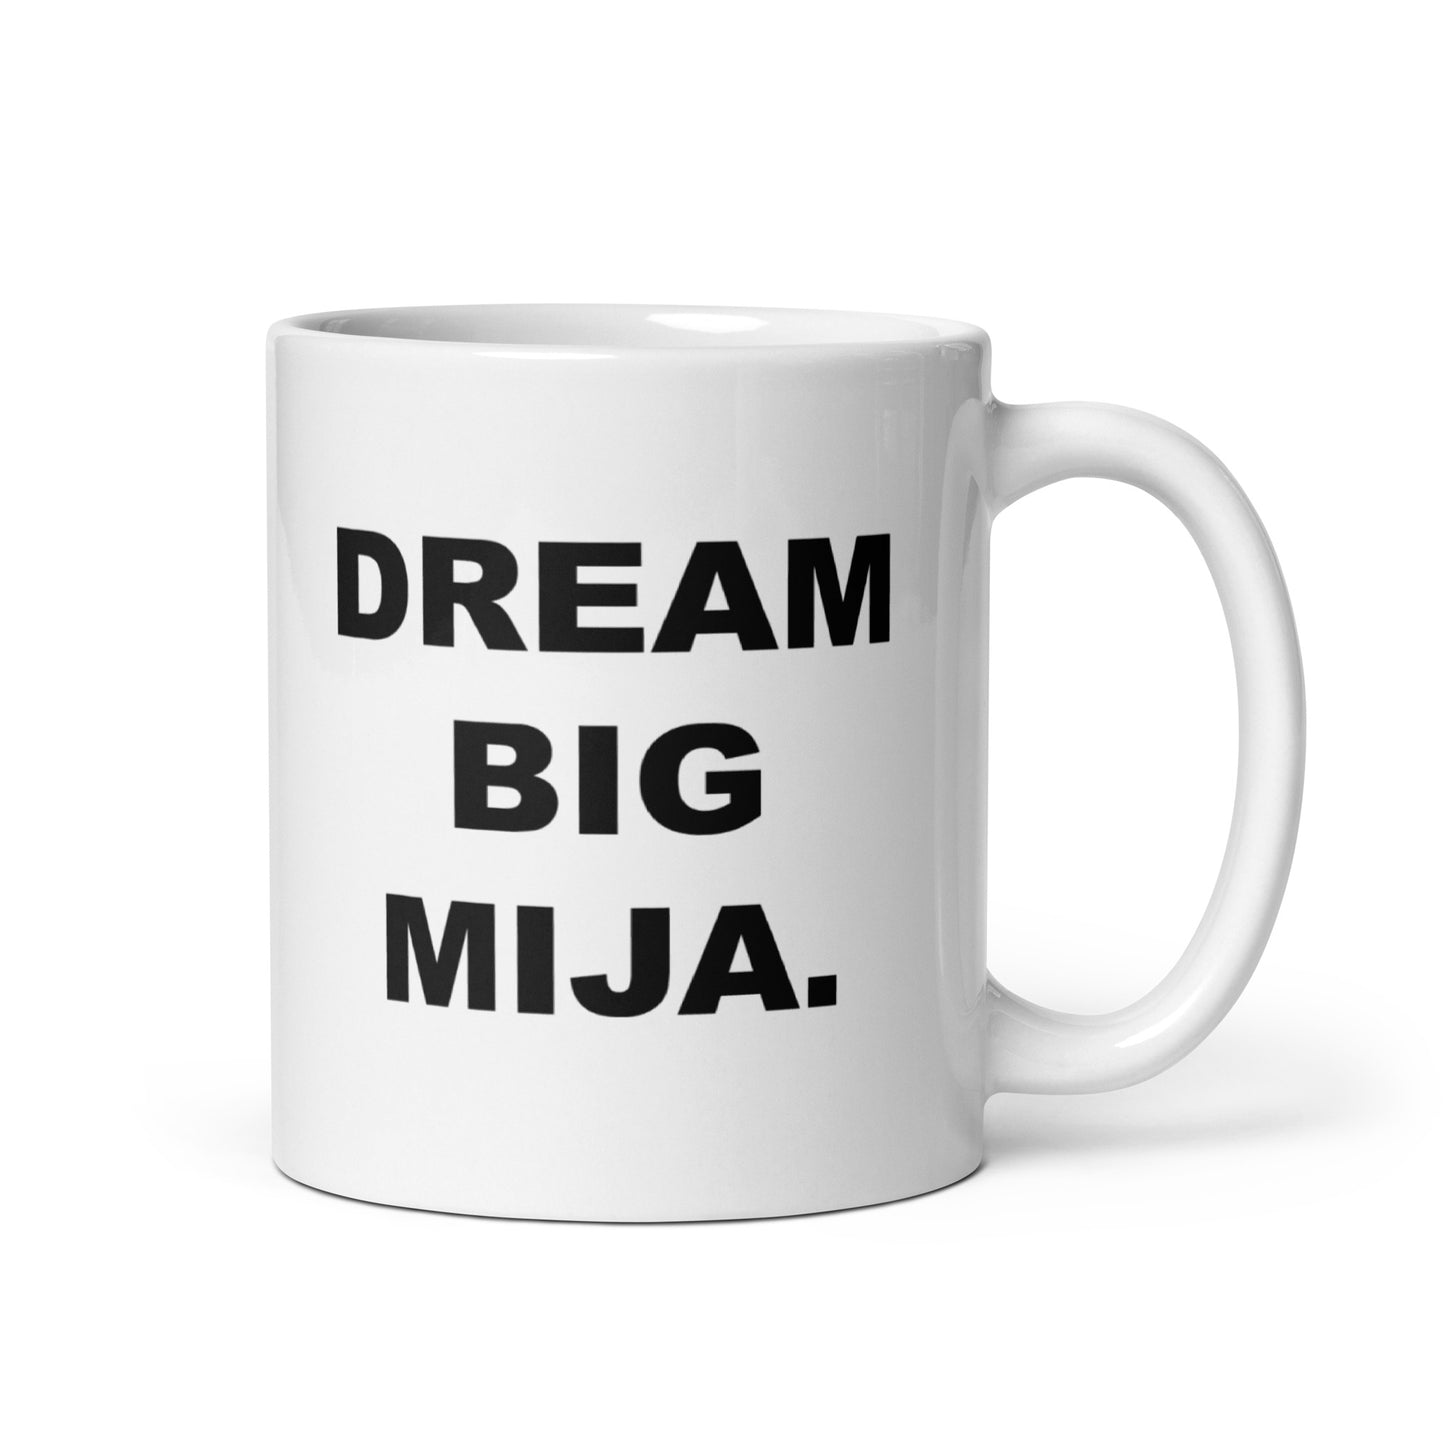 Dream Big Mija Mug 